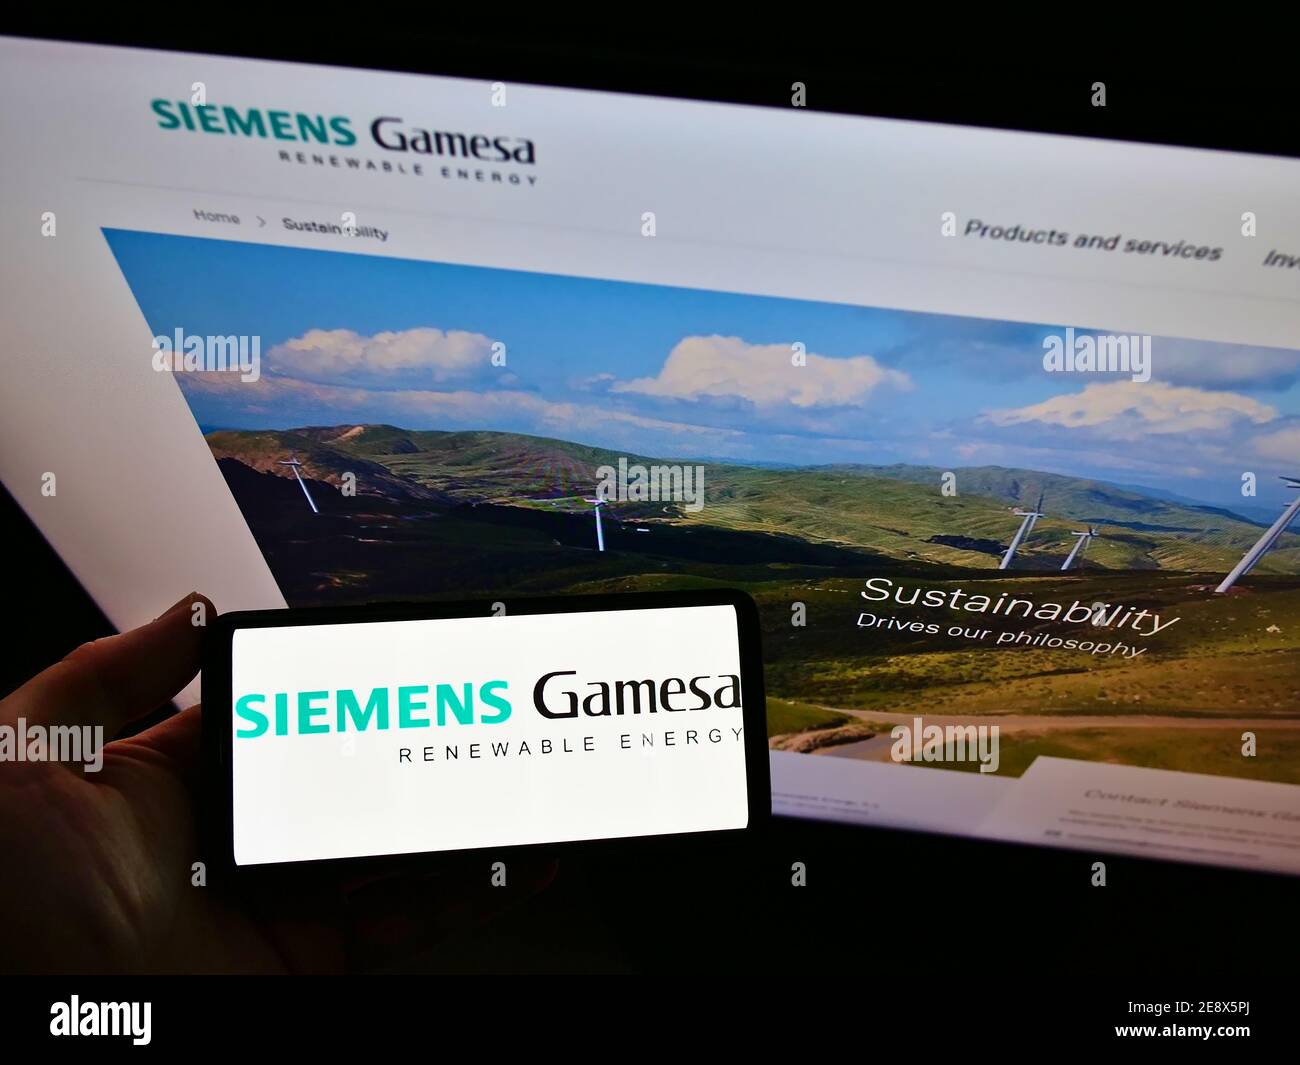 Vue en grand angle de la personne qui tient un smartphone avec le logo de la société d'ingénierie Siemens Gamesa Renewable Energy S.A. sur l'exposition. Mise au point sur l'écran du téléphone. Banque D'Images